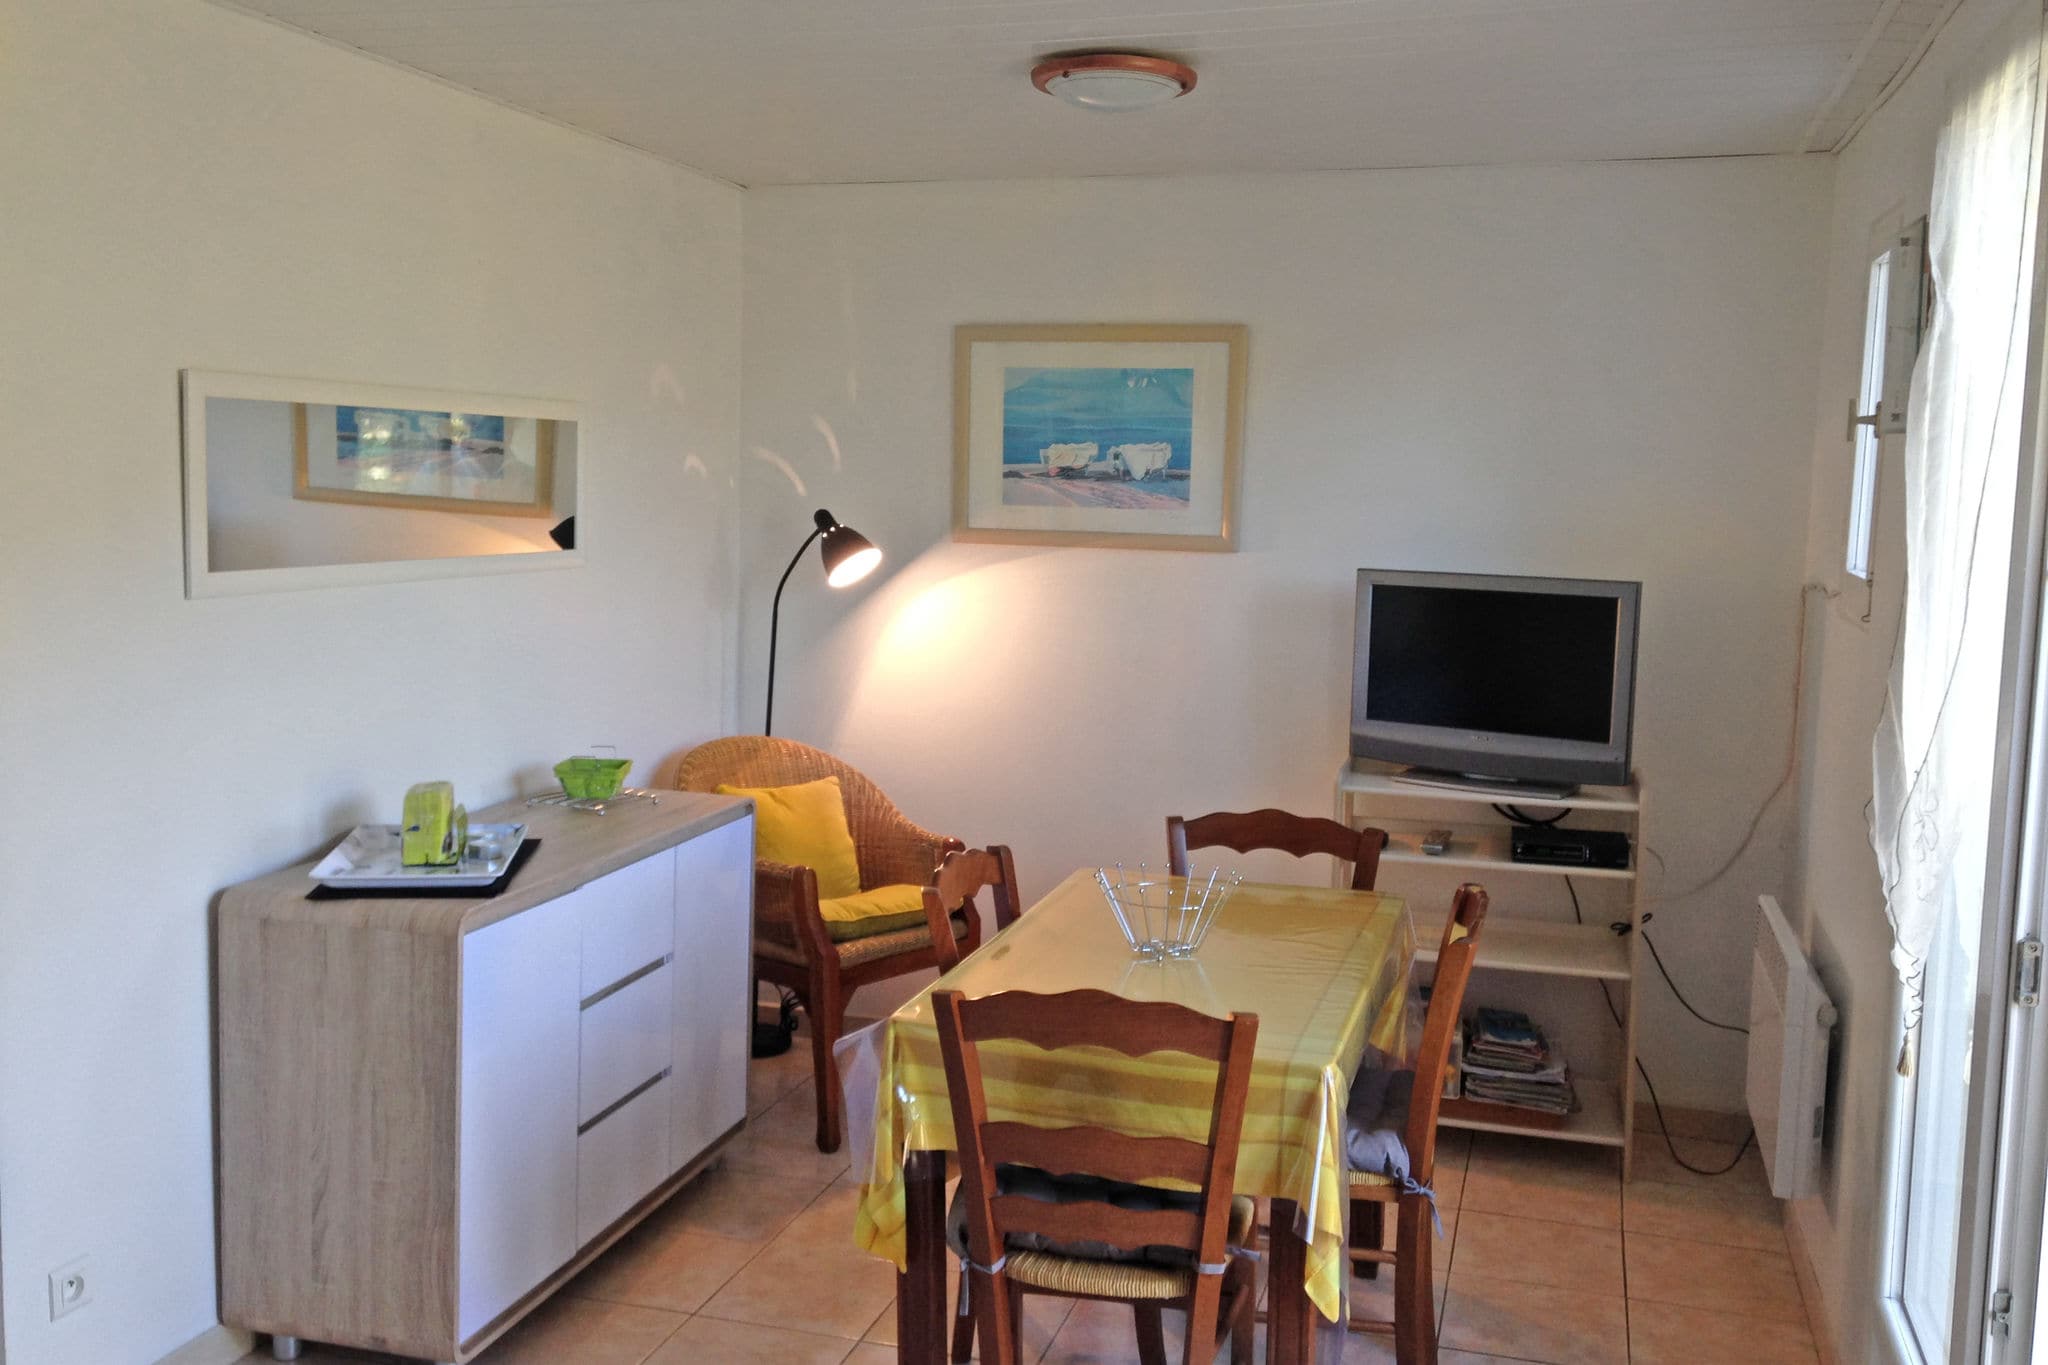 Maison de vacances calme avec terrasse en Corse